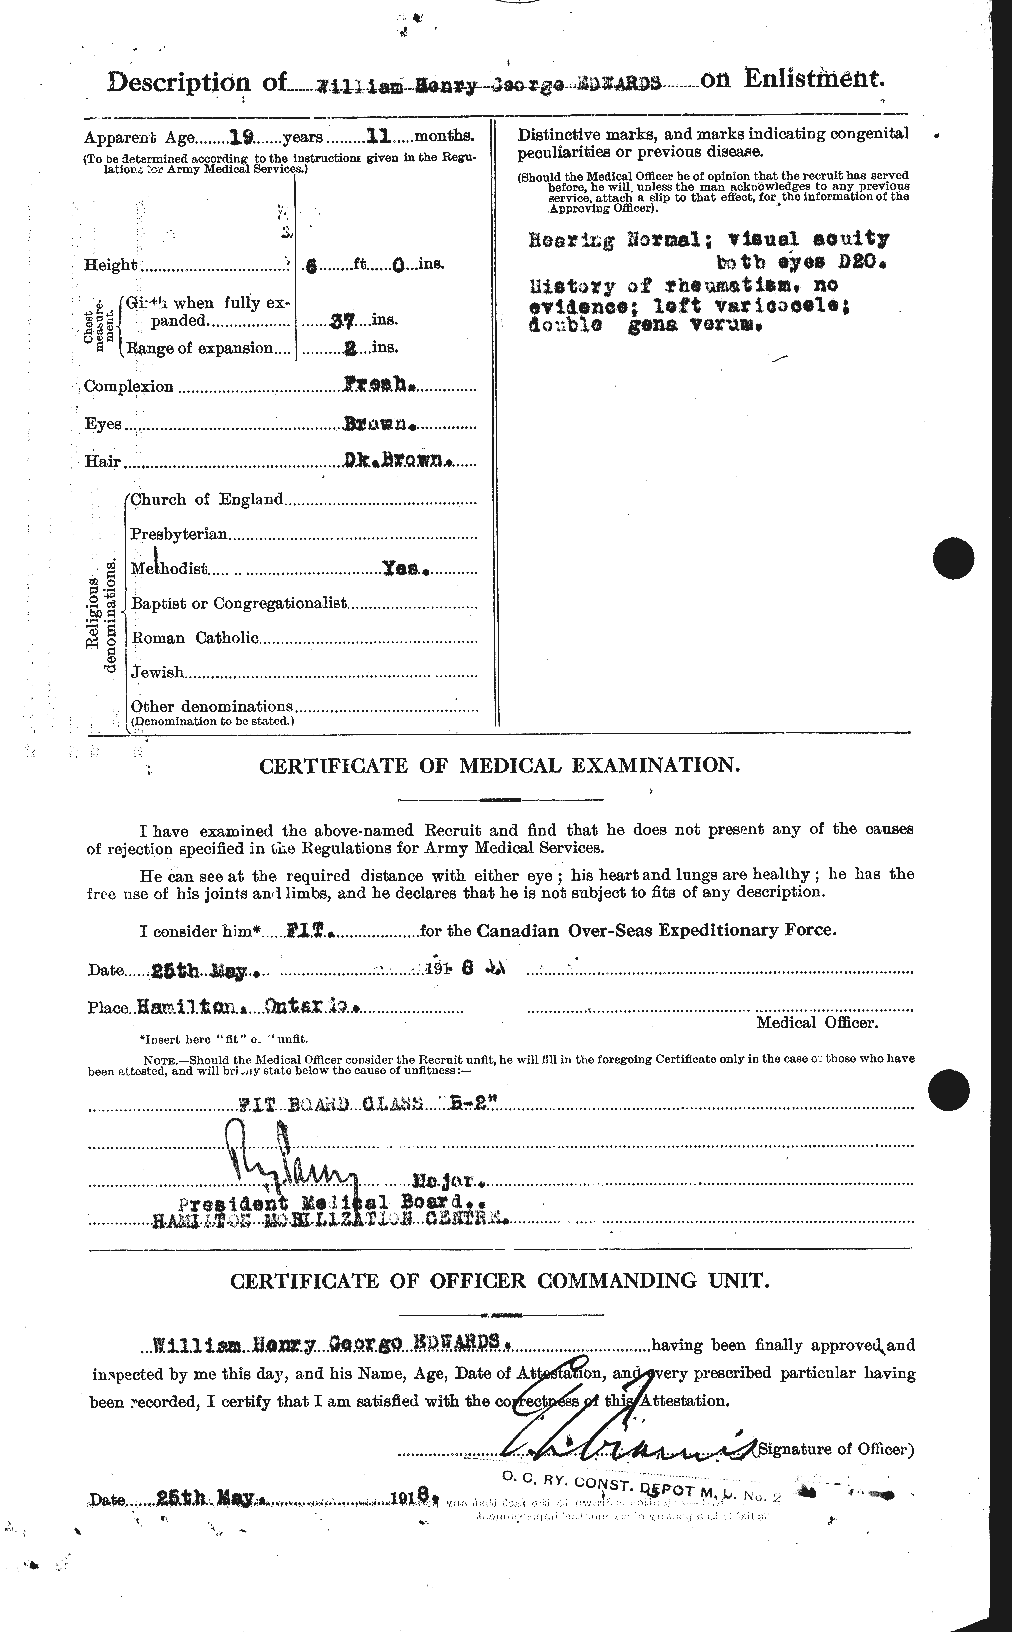 Dossiers du Personnel de la Première Guerre mondiale - CEC 310386b